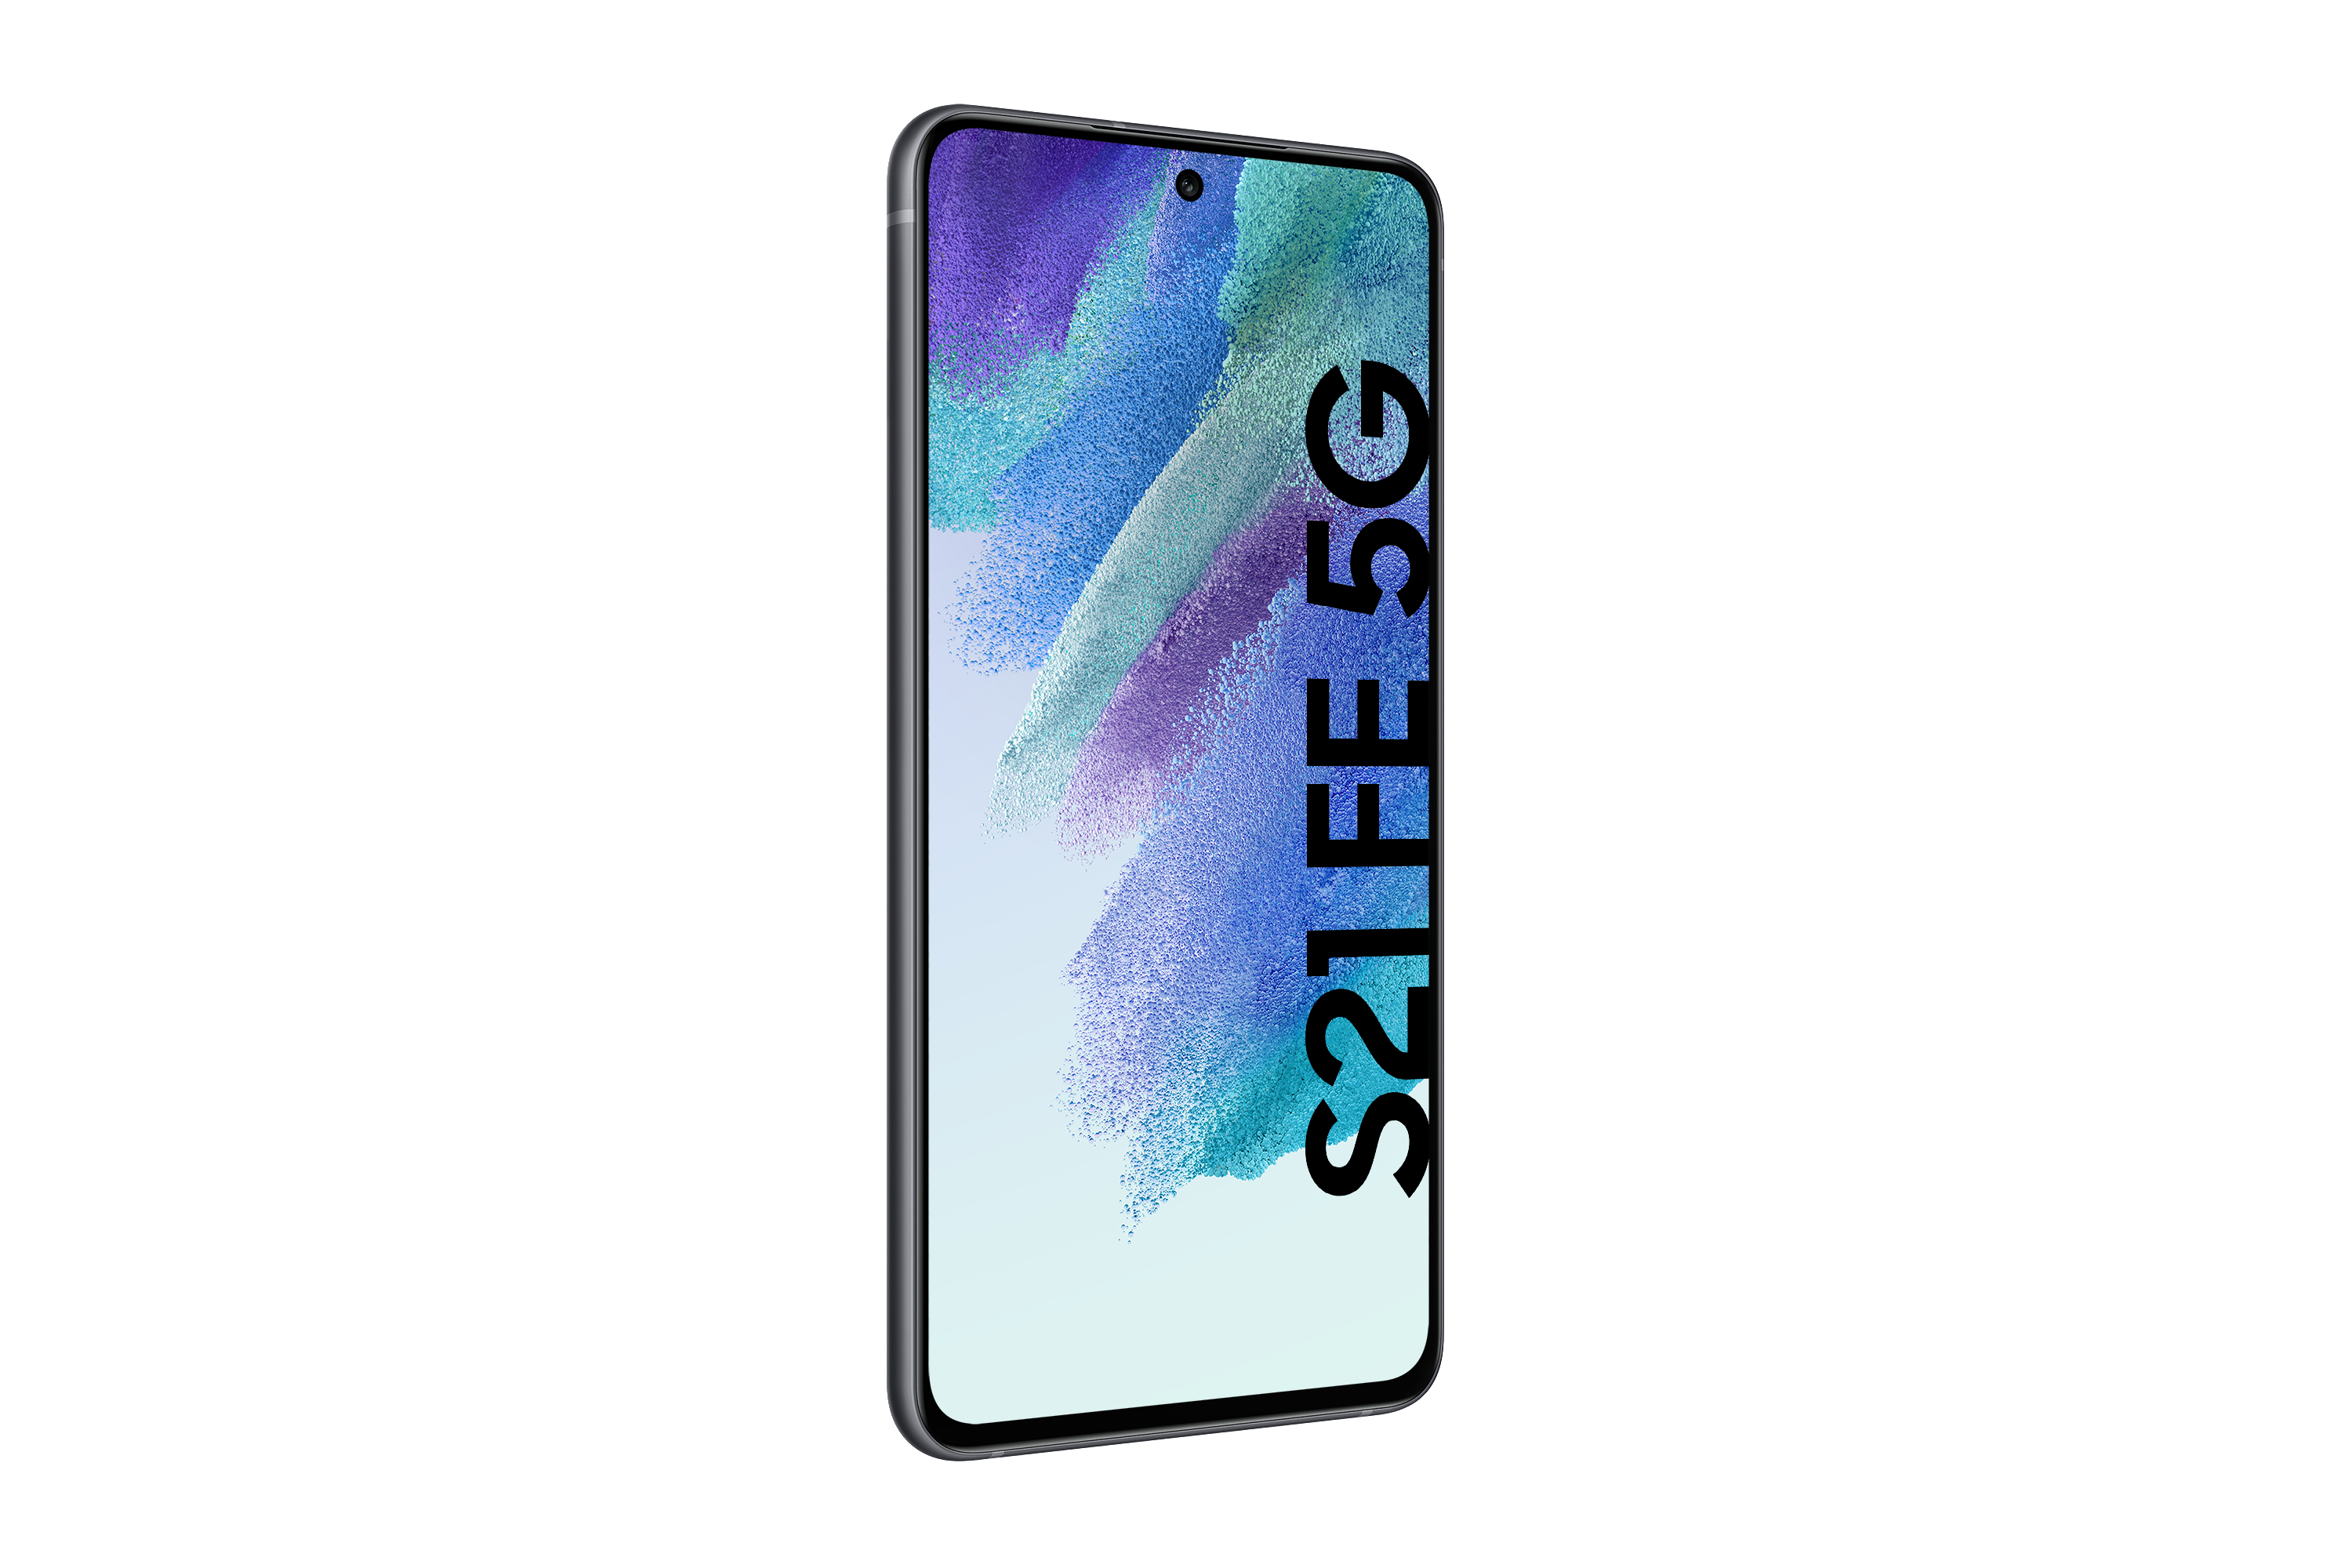 S21 SAMSUNG Graphite Galaxy SIM 5G FE 256 Dual GB